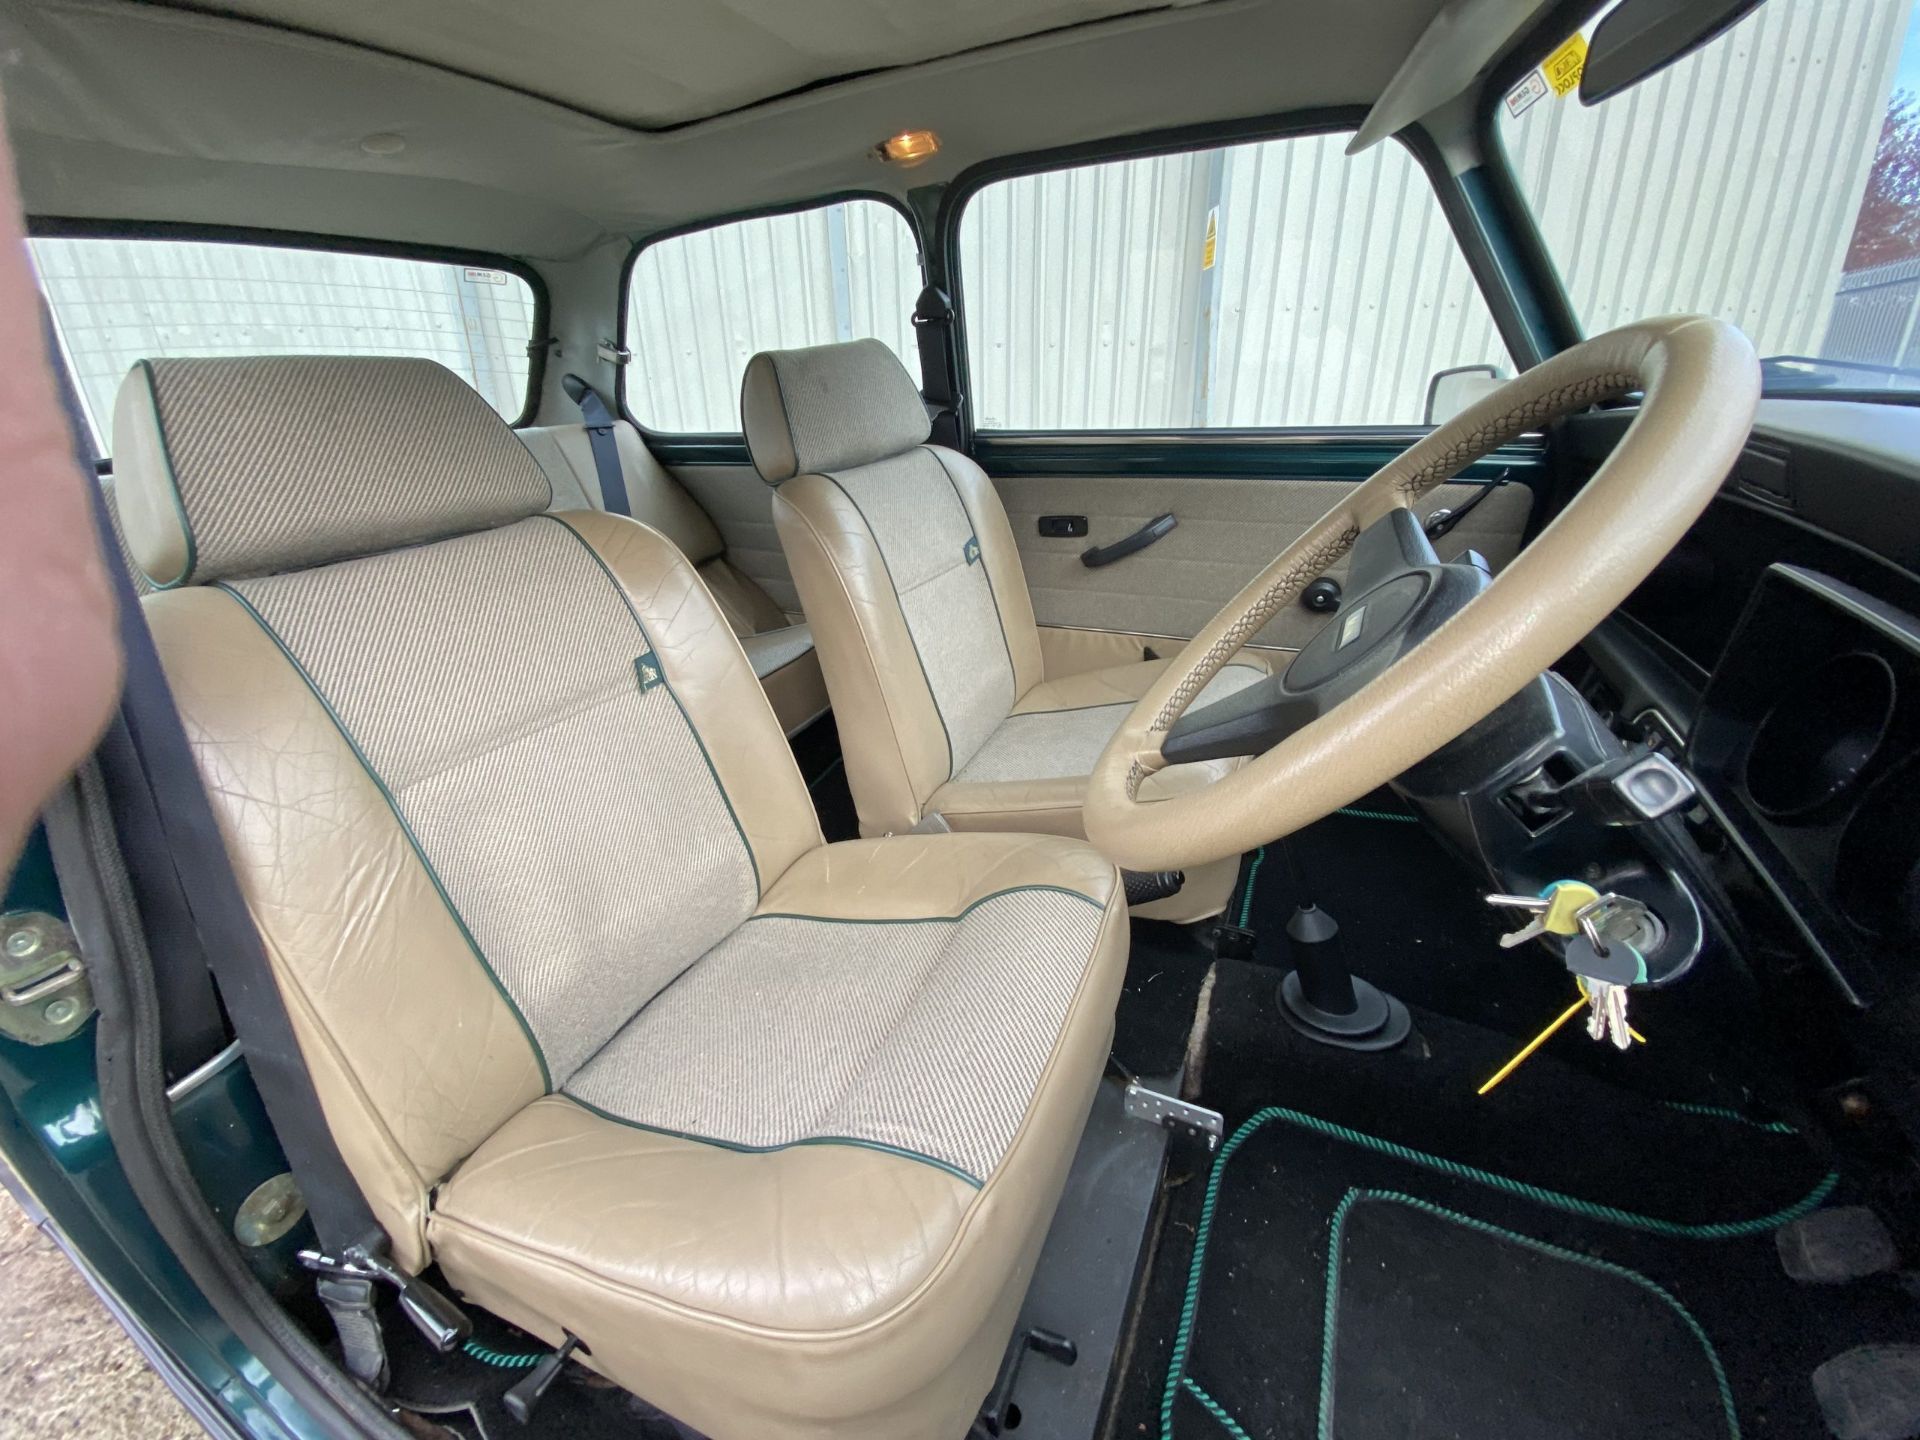 Rover Mini British Open Edition - Image 29 of 42